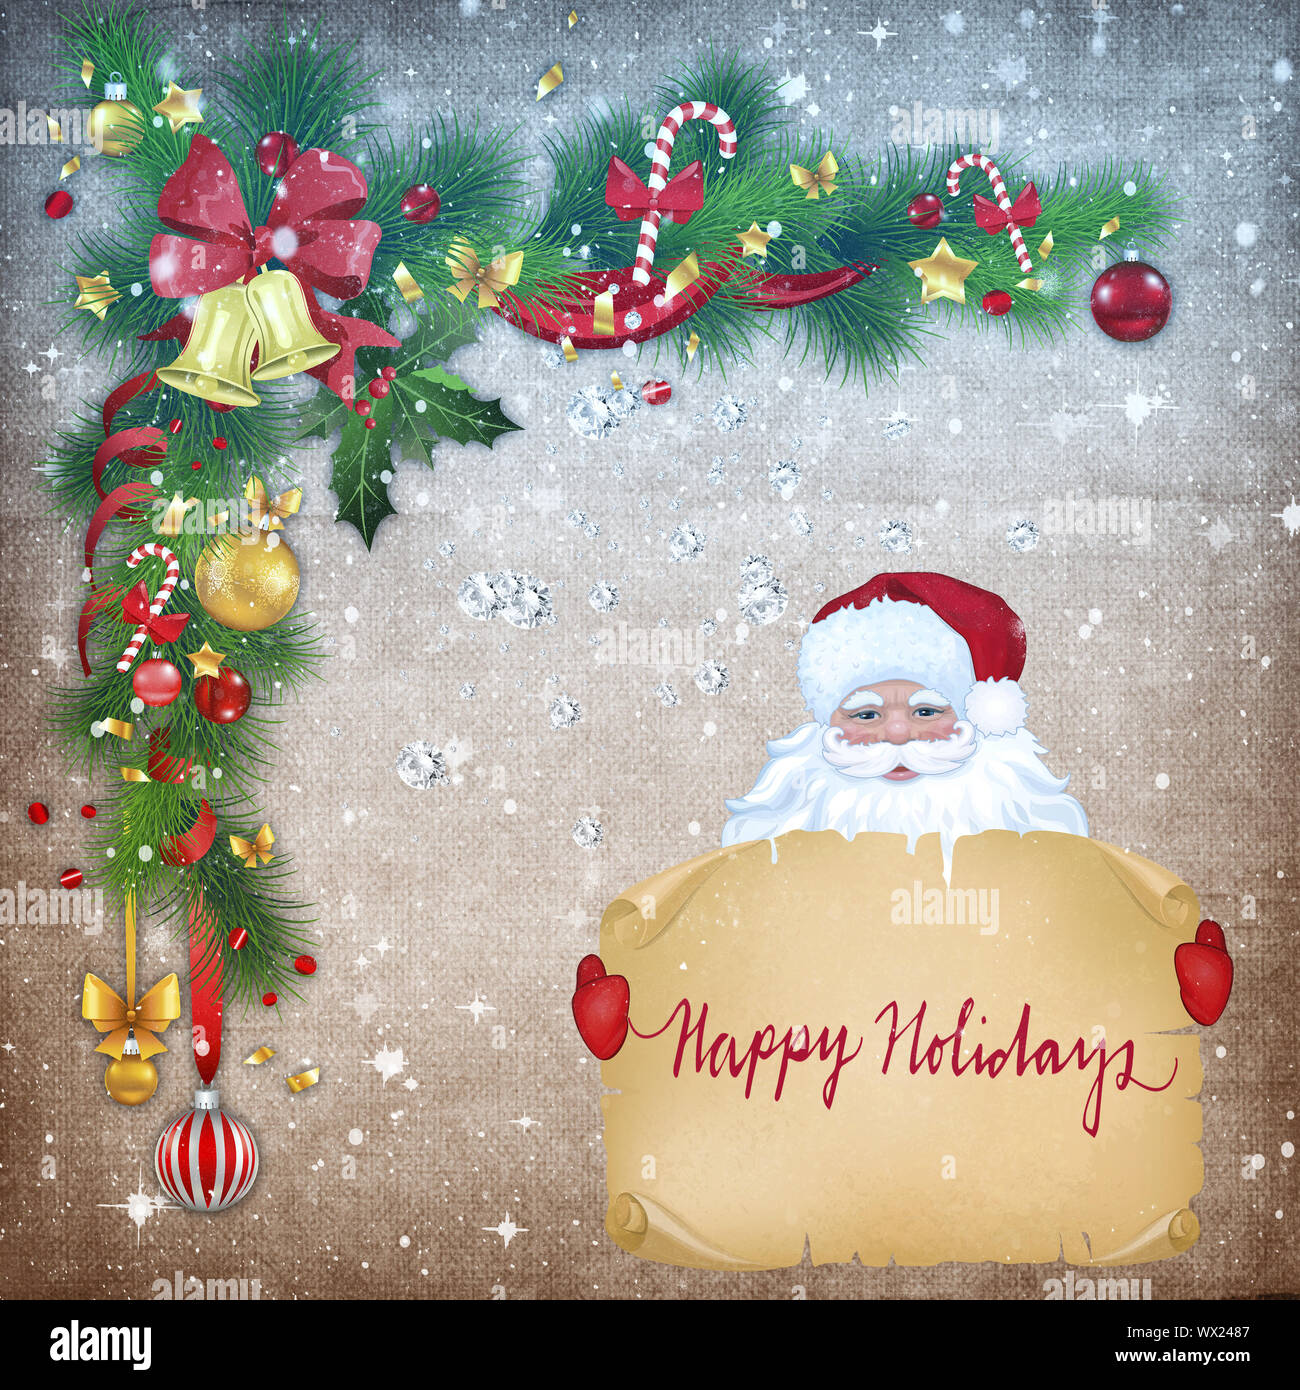 Weihnachten Grußkarte mit dem Bild von Santa Claus. Stockfoto